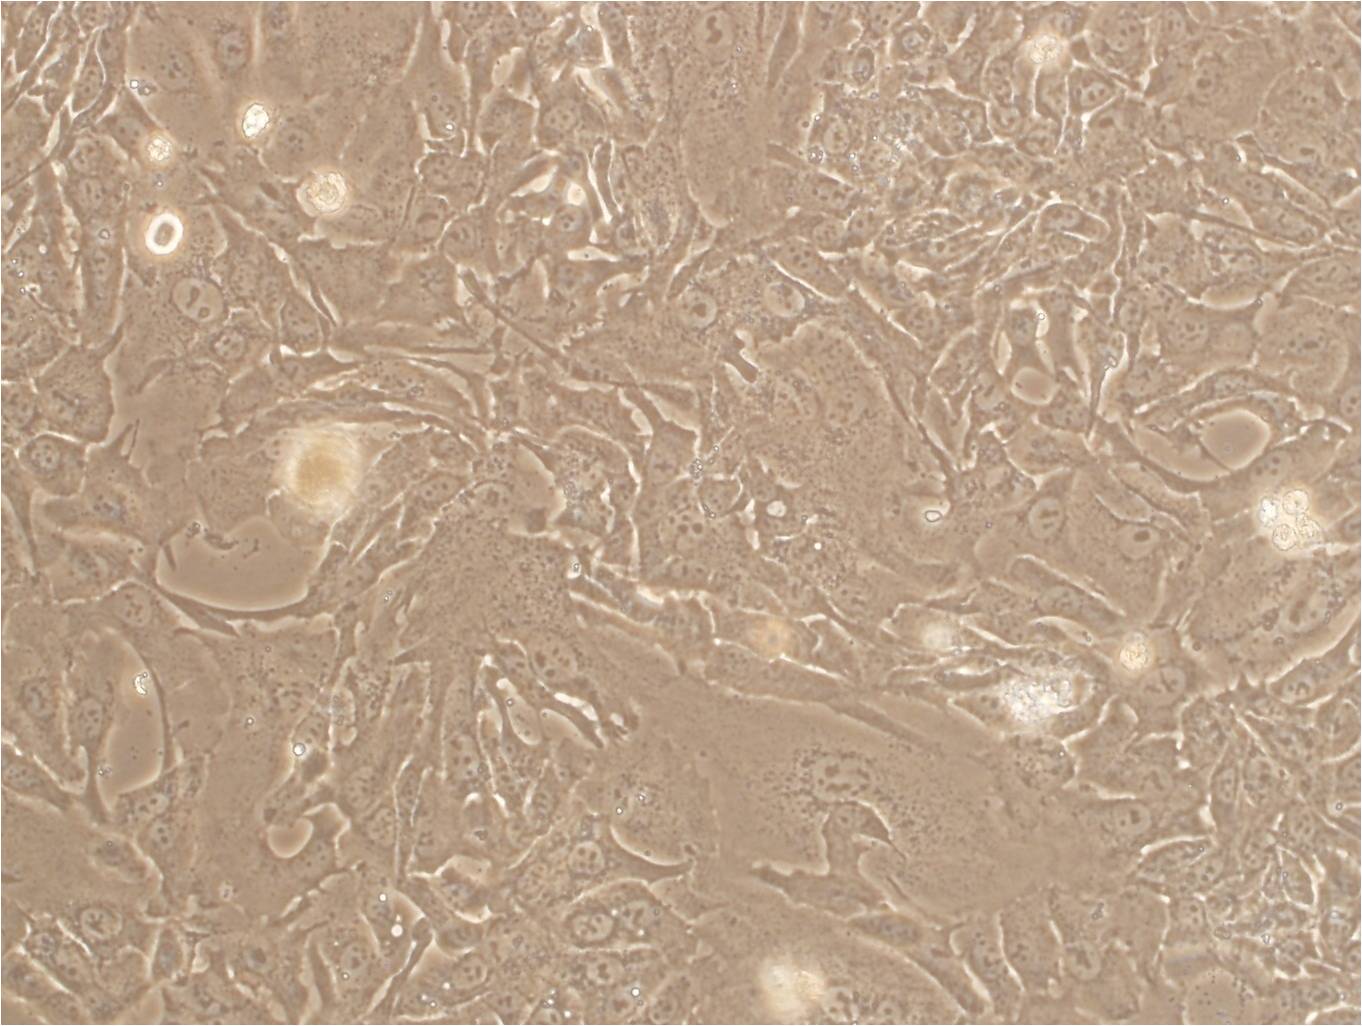 HN-6 Cells|人舌鳞癌克隆细胞(包送STR鉴定报告),HN-6 Cells